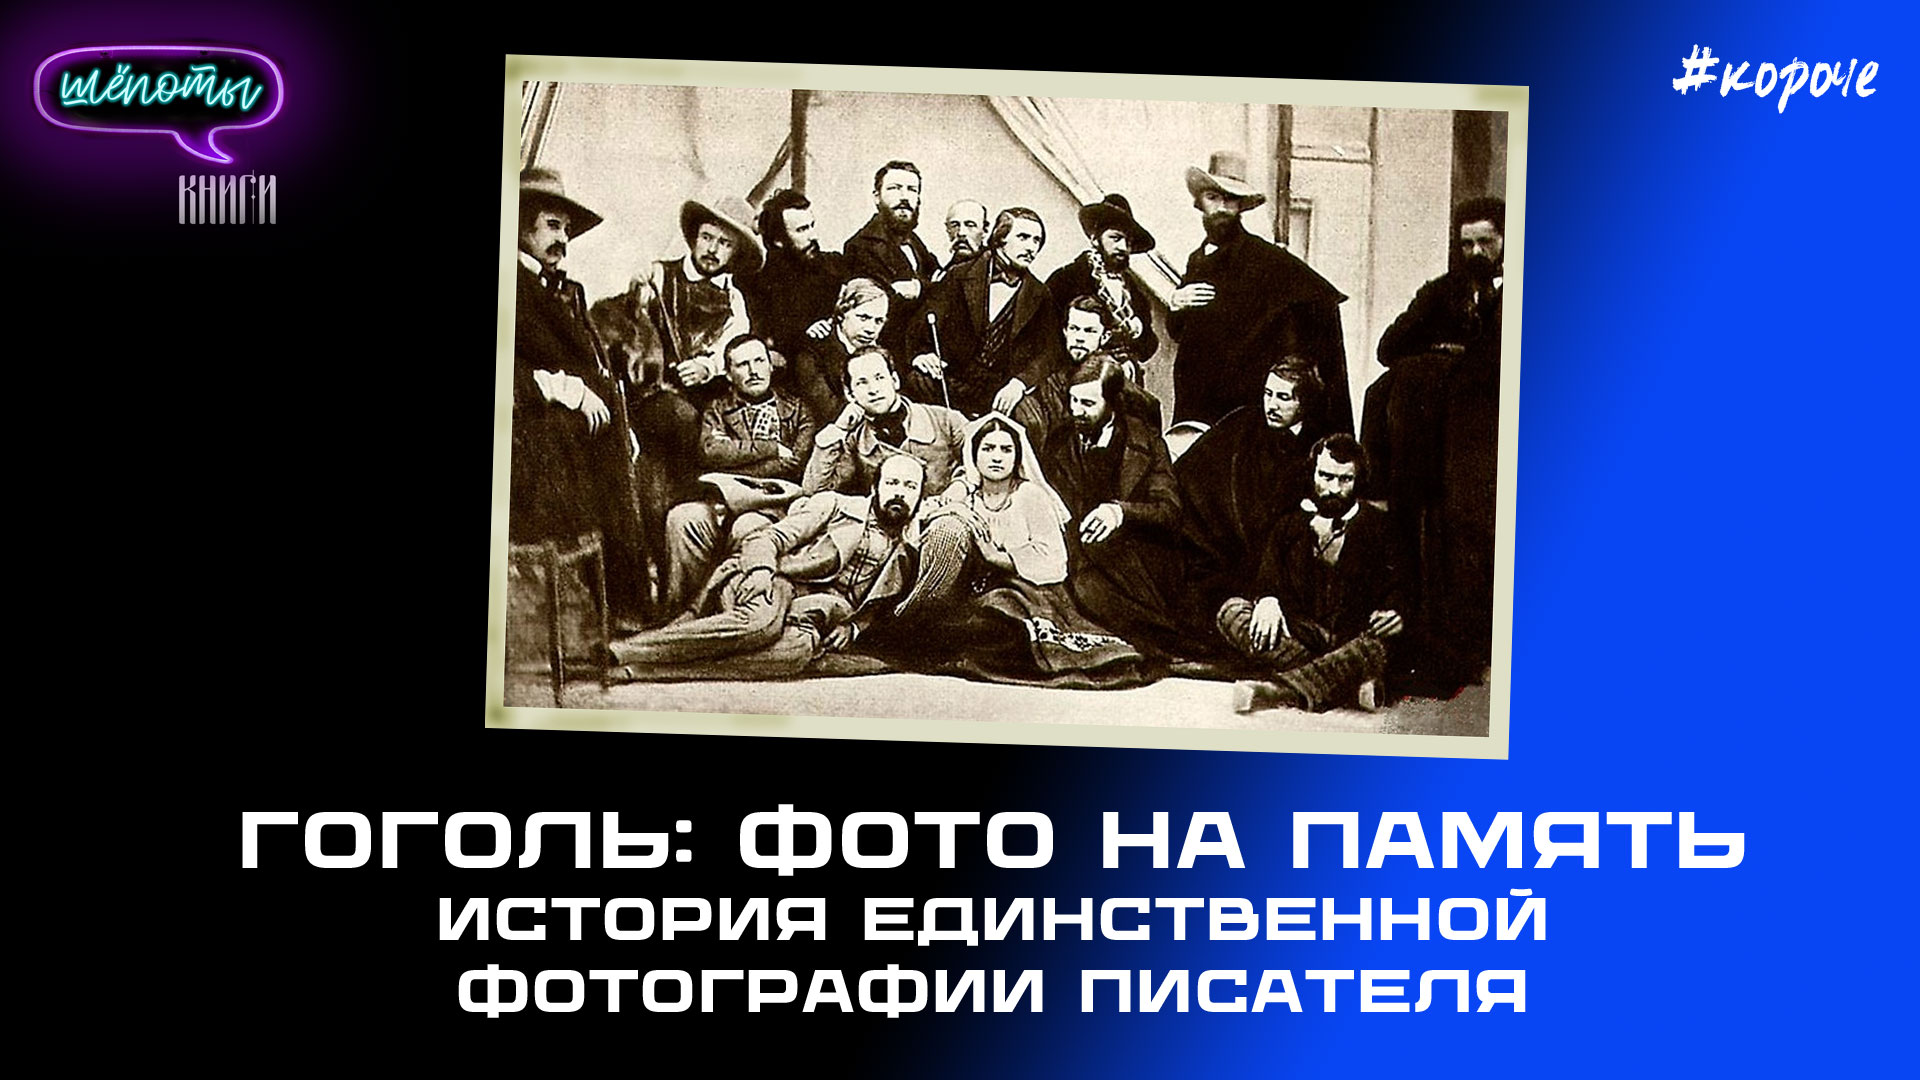 История создания единственной фотографии Гоголя | Шёпоты и книги. Подкаст  | s03e04